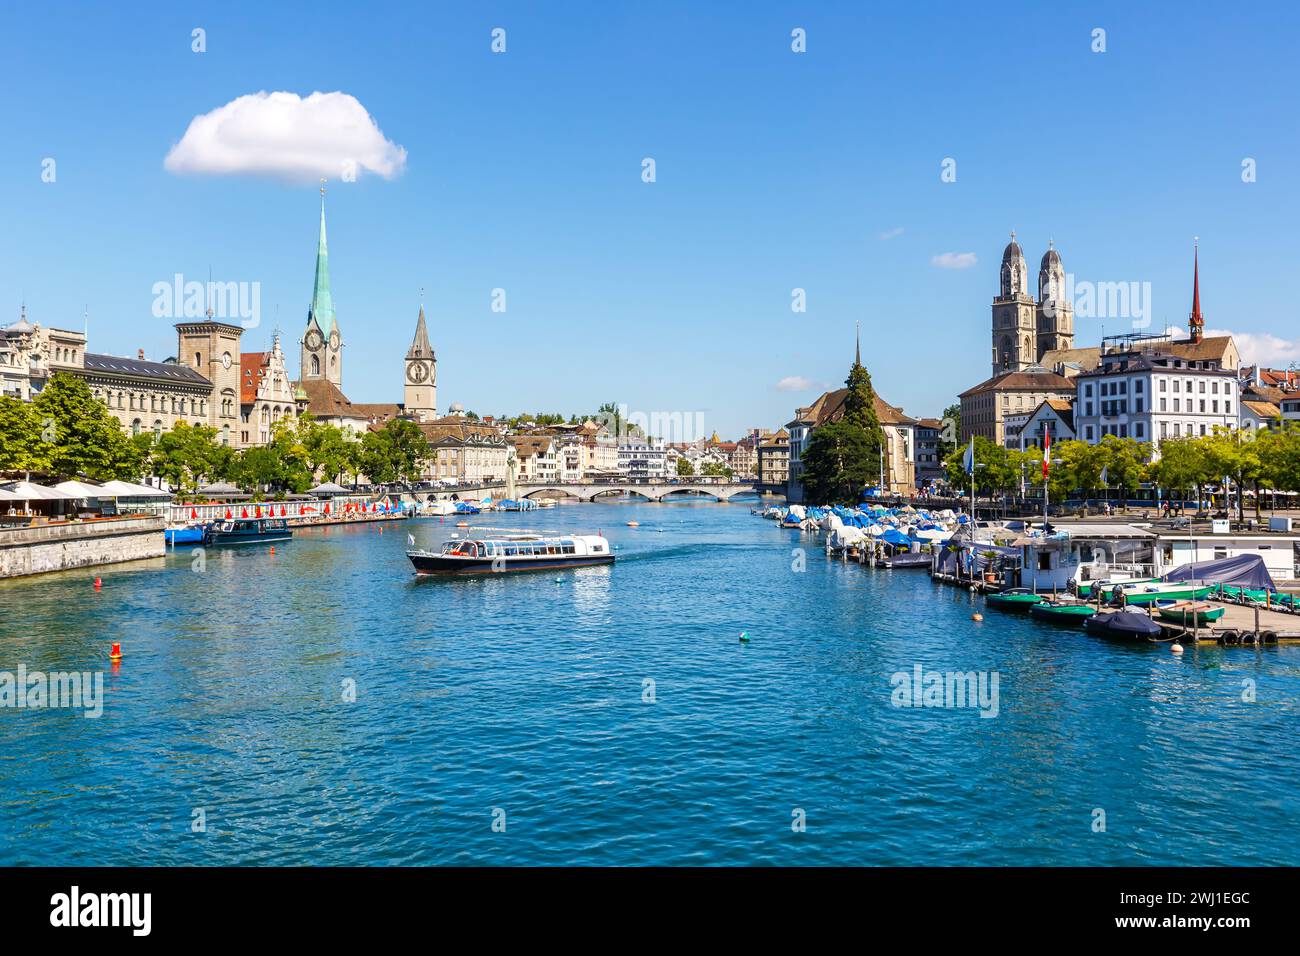 Zurich skyline city on the river Limmat in Switzerland Stock Photo